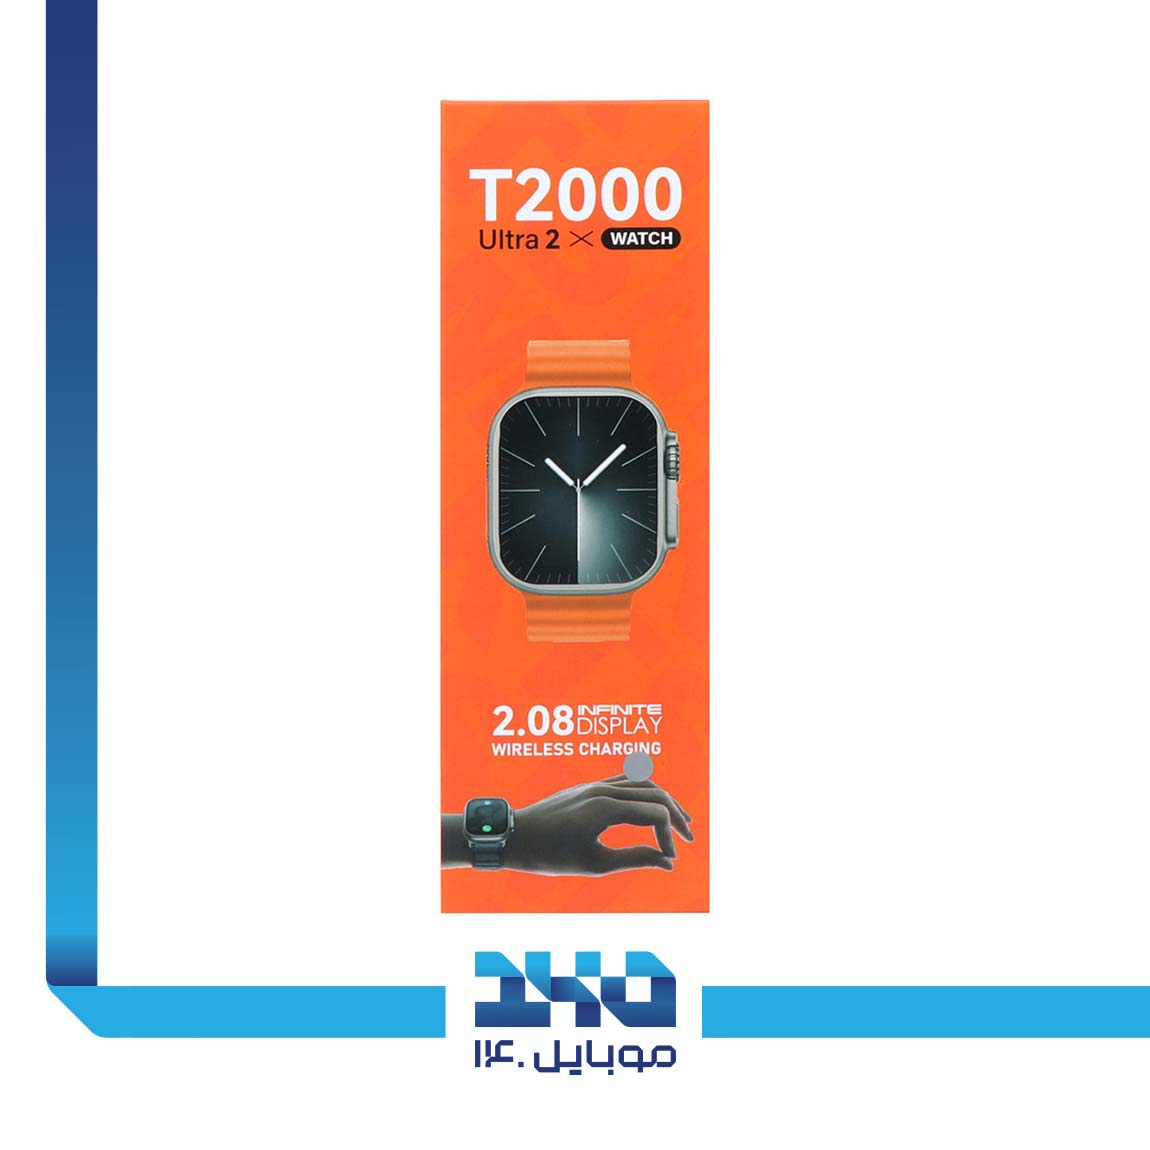 T2000 Ultra 2 Smart Watch 6